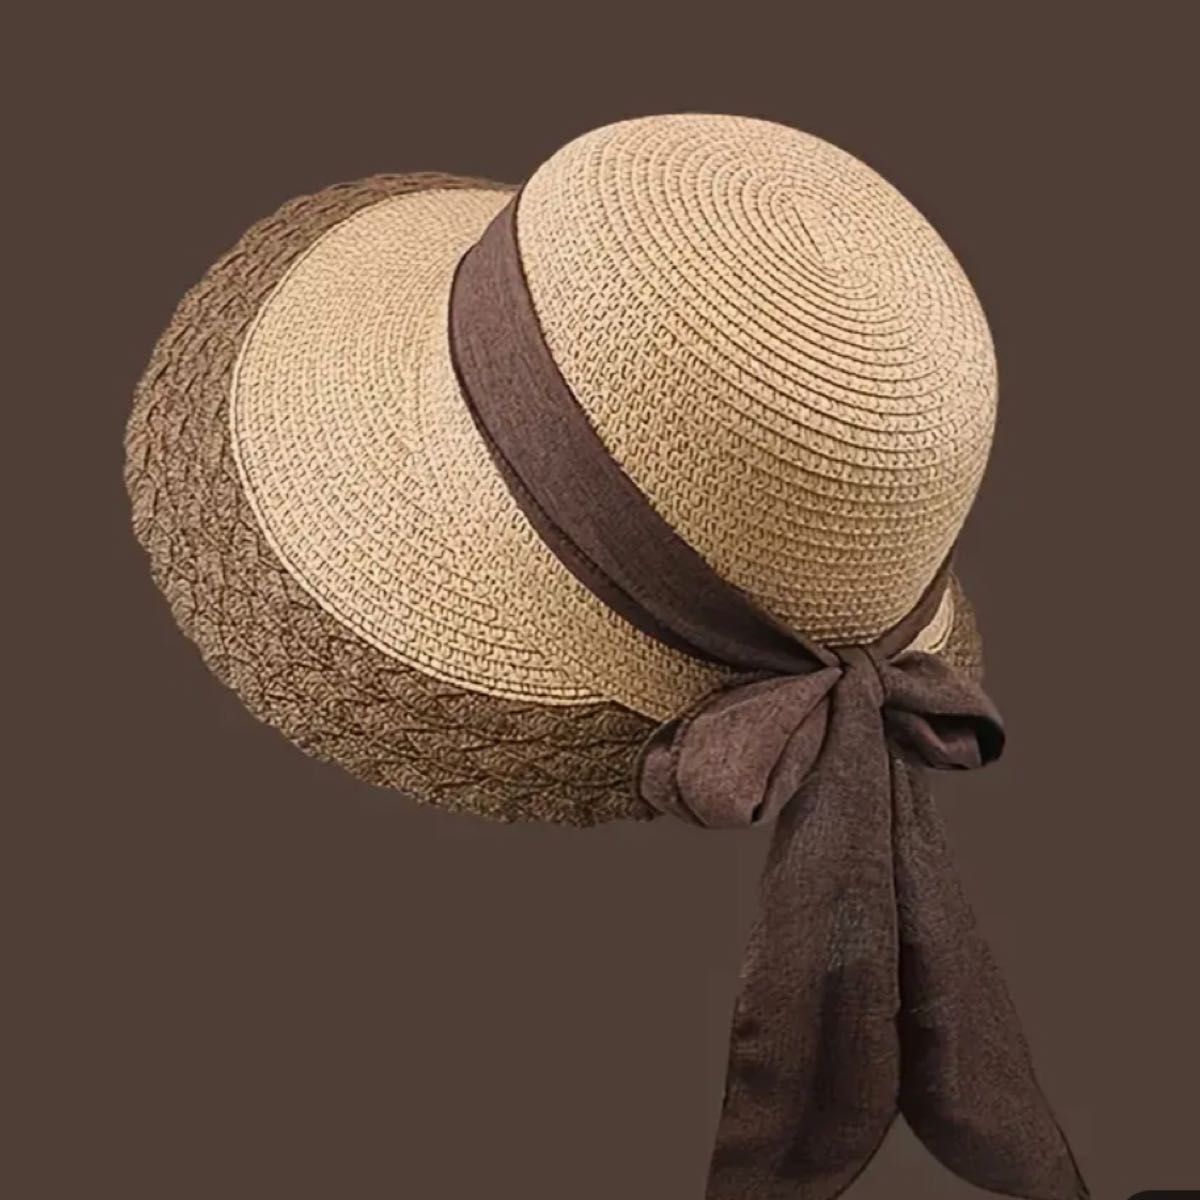 ストローハット リボン付き バケットハット 日よけ つば広ハット 通気性良い可愛い帽子です 折りたたみ可能サイズ56～58cm